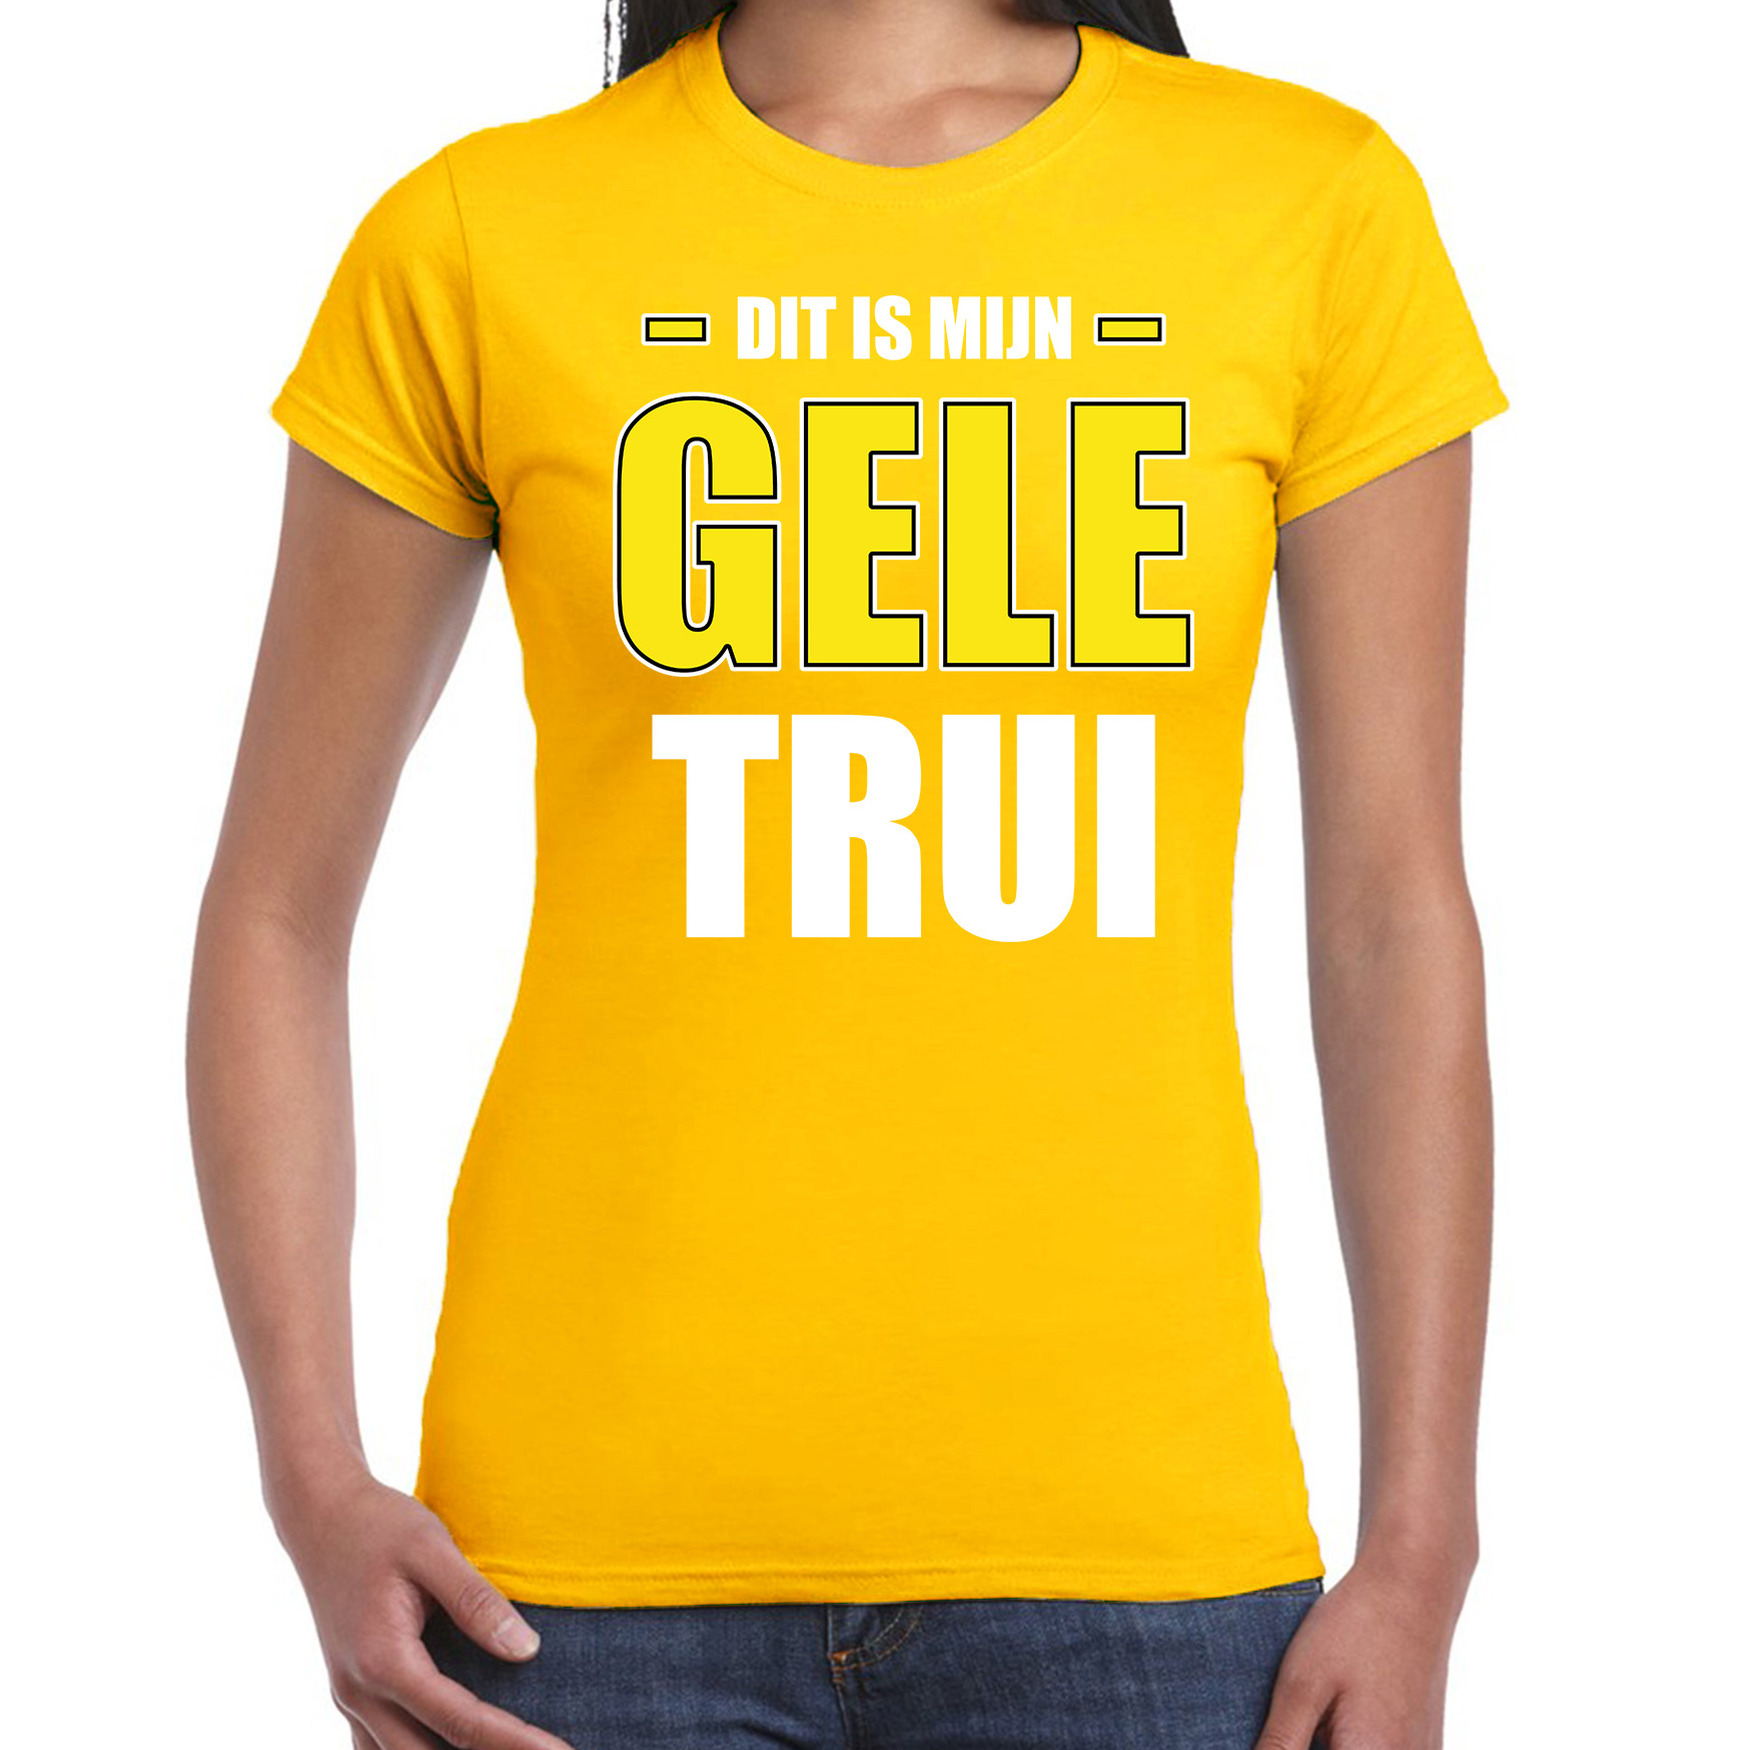 Gele trui t-shirt geel voor dames Wieler tour-wielerwedstrijd trui shirt geel